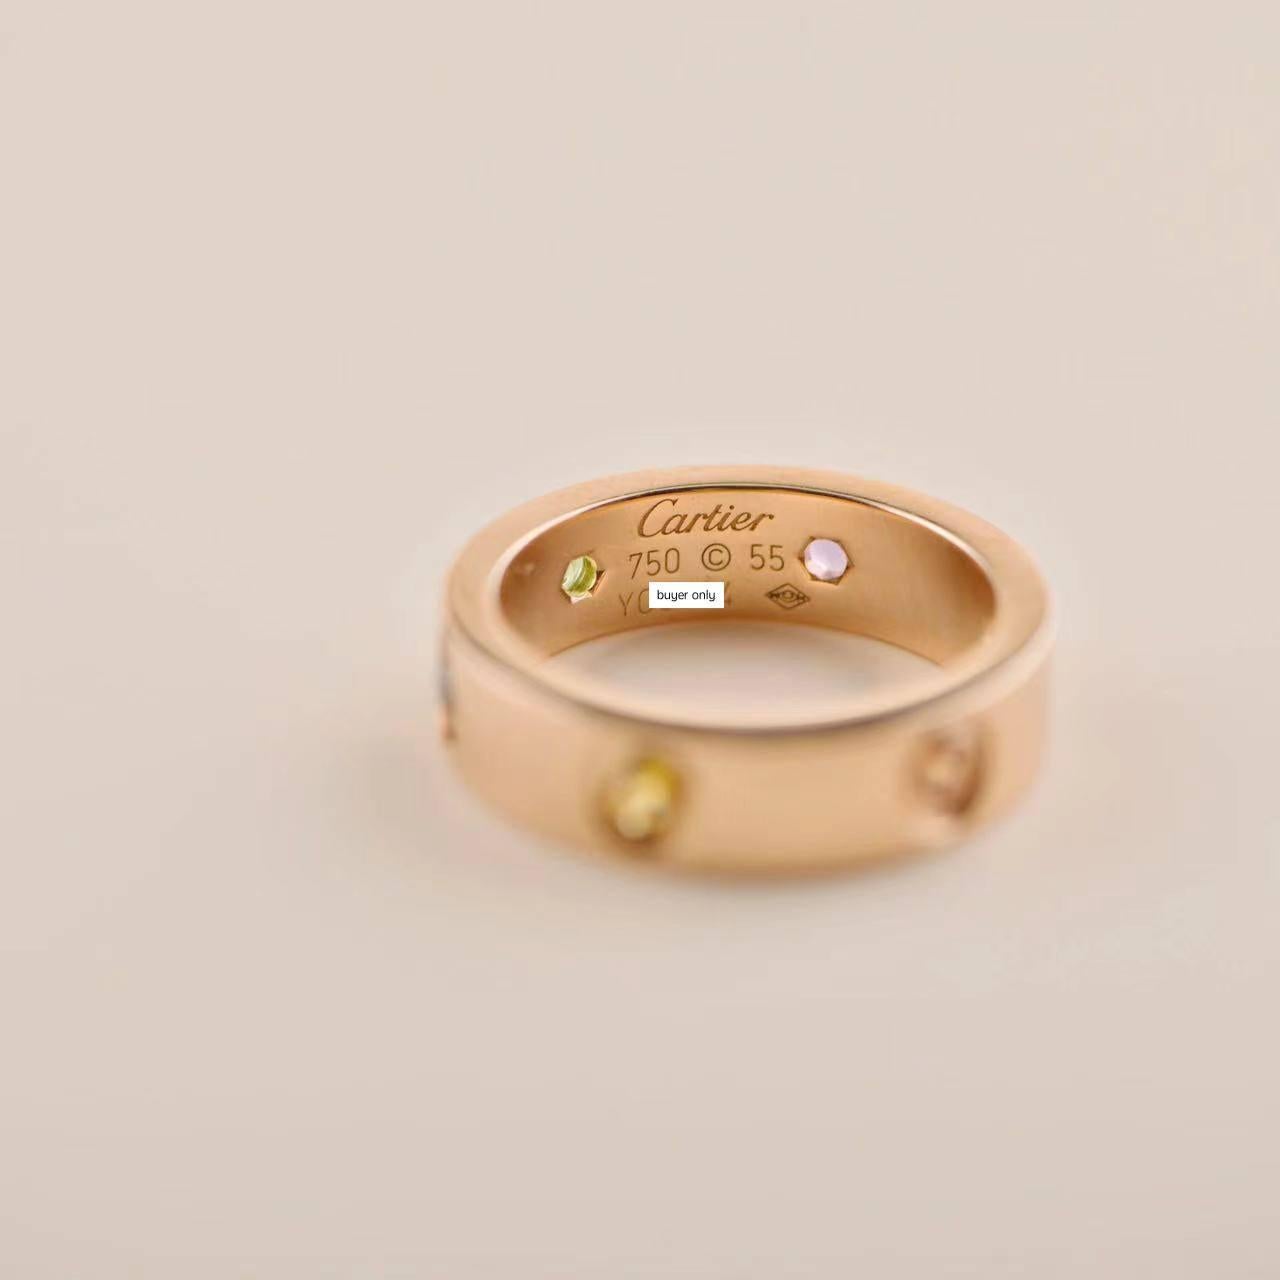 Cartier Love Regenbogen Multigem Roségold Ring Größe 55 1